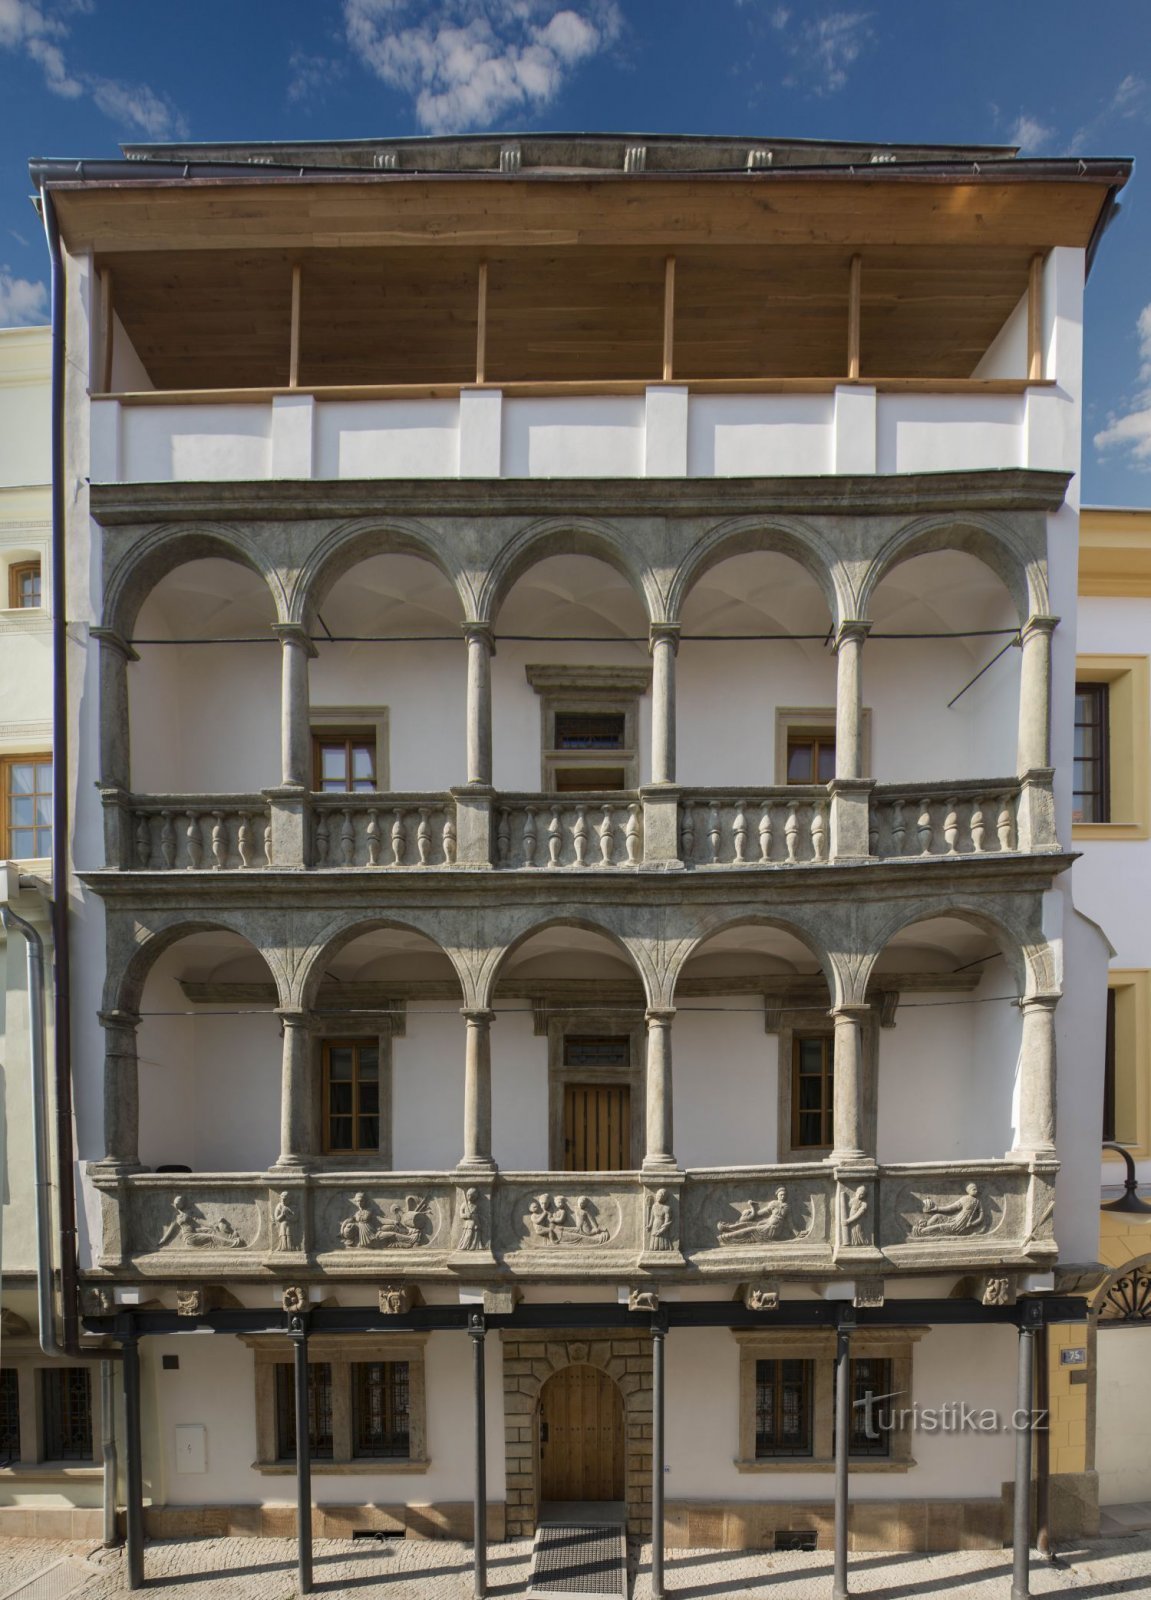 Museo de la Cultura de Títeres en Chrudim